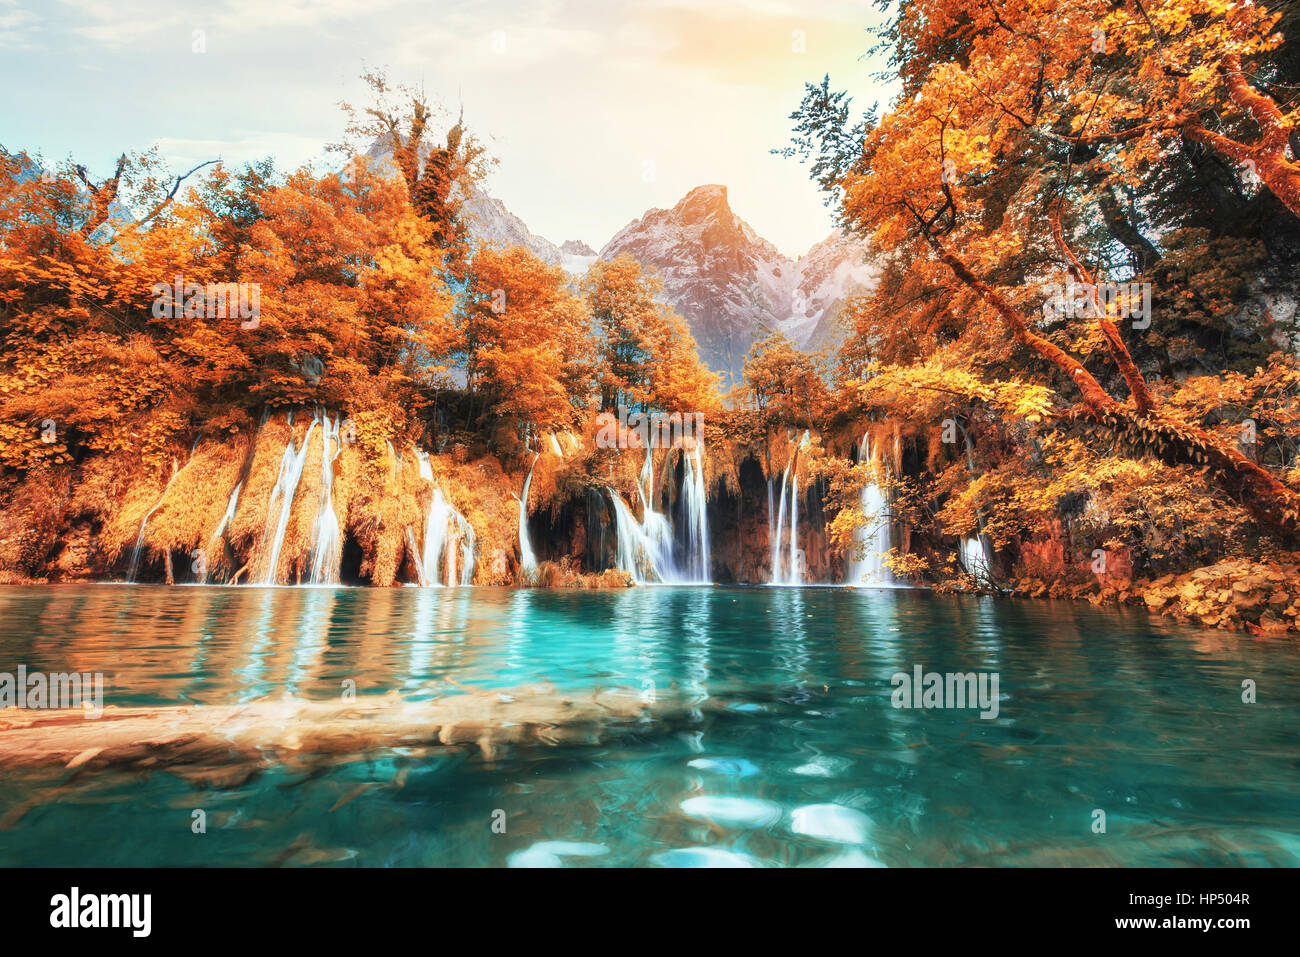 Vedute panoramiche dell'acqua turchese e dalla luce diretta dei raggi solari. Foto Stock